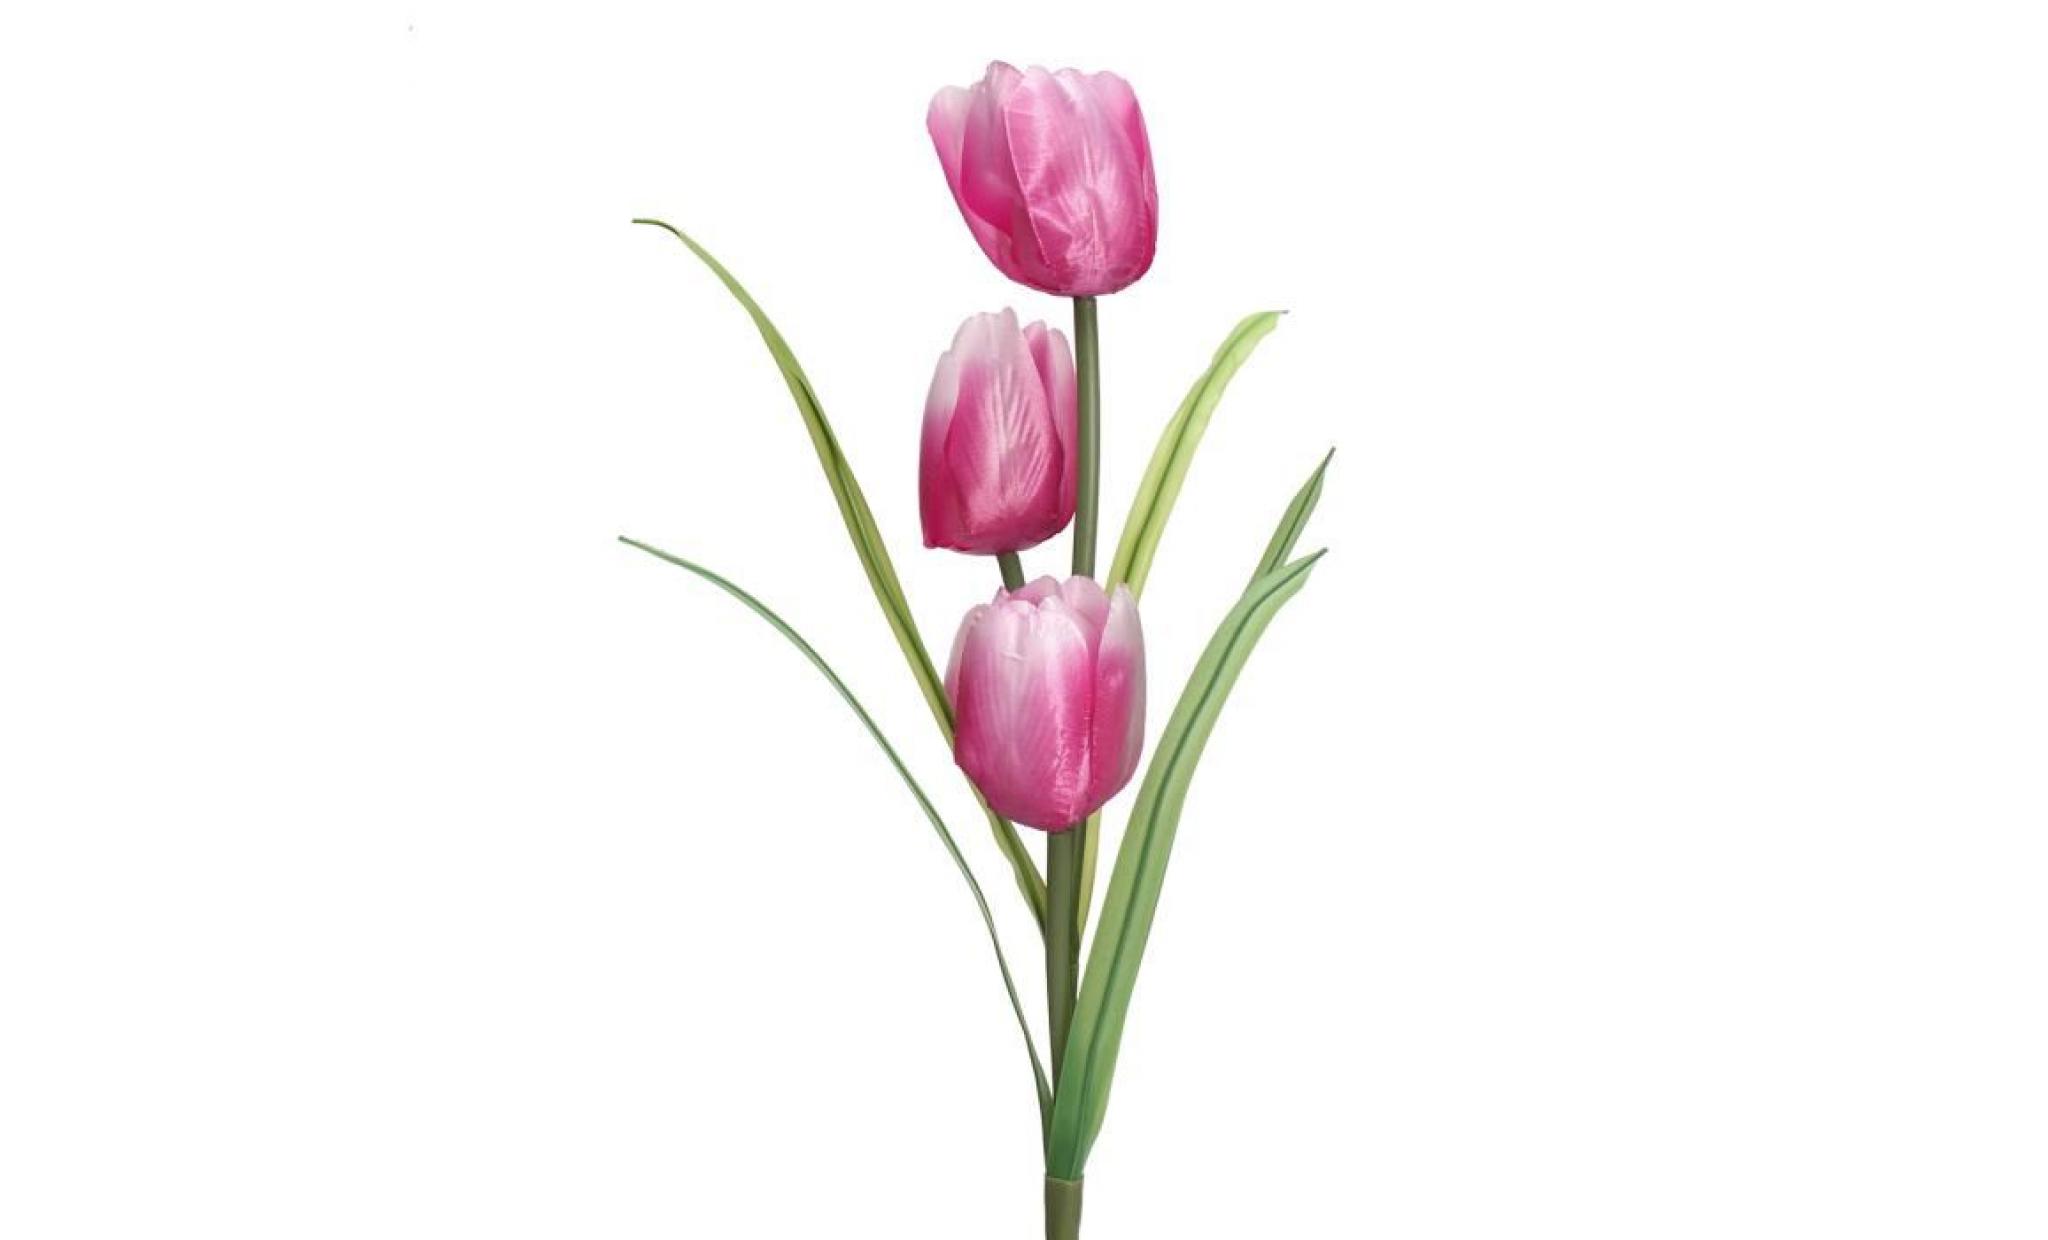 neufu 3 led energie solaire lampe lumière tulipe fleur pour jardin cour extérieur chemin violet blanc pas cher